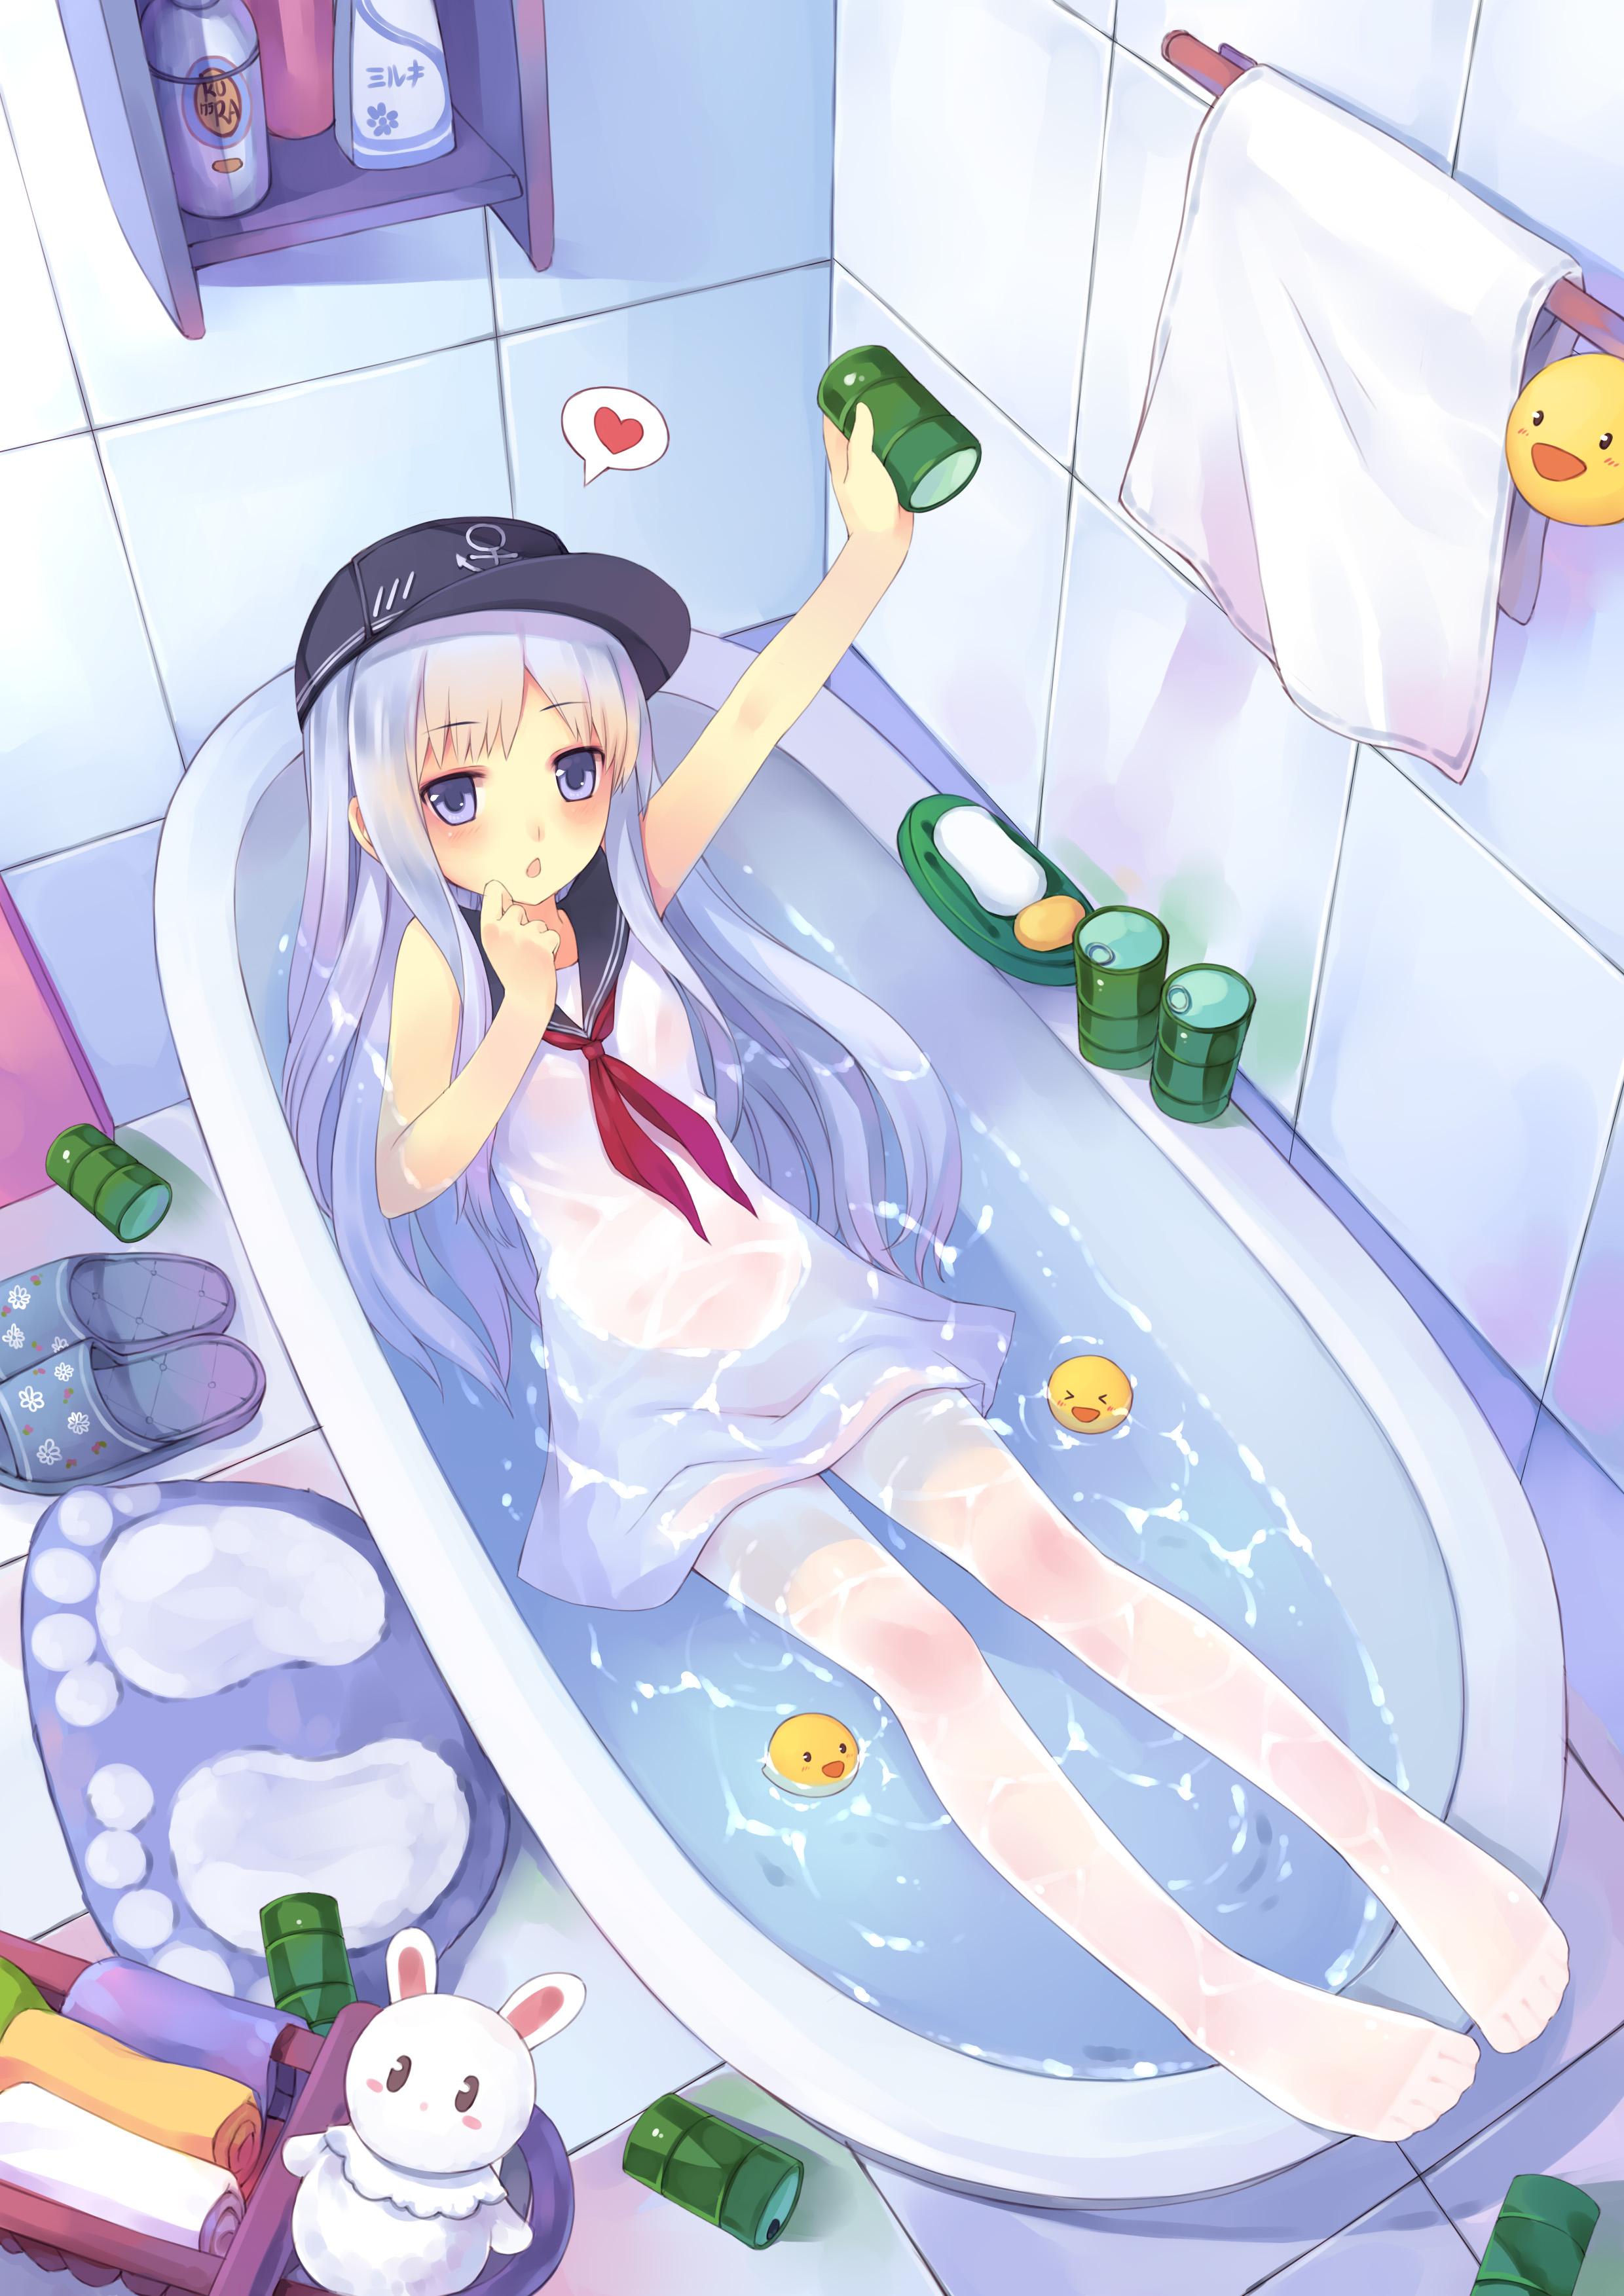 Socks Vertical Anime Girls Bathtub Water In Water Wet Hat Heart Towel Rubber Ducks 2480x3507